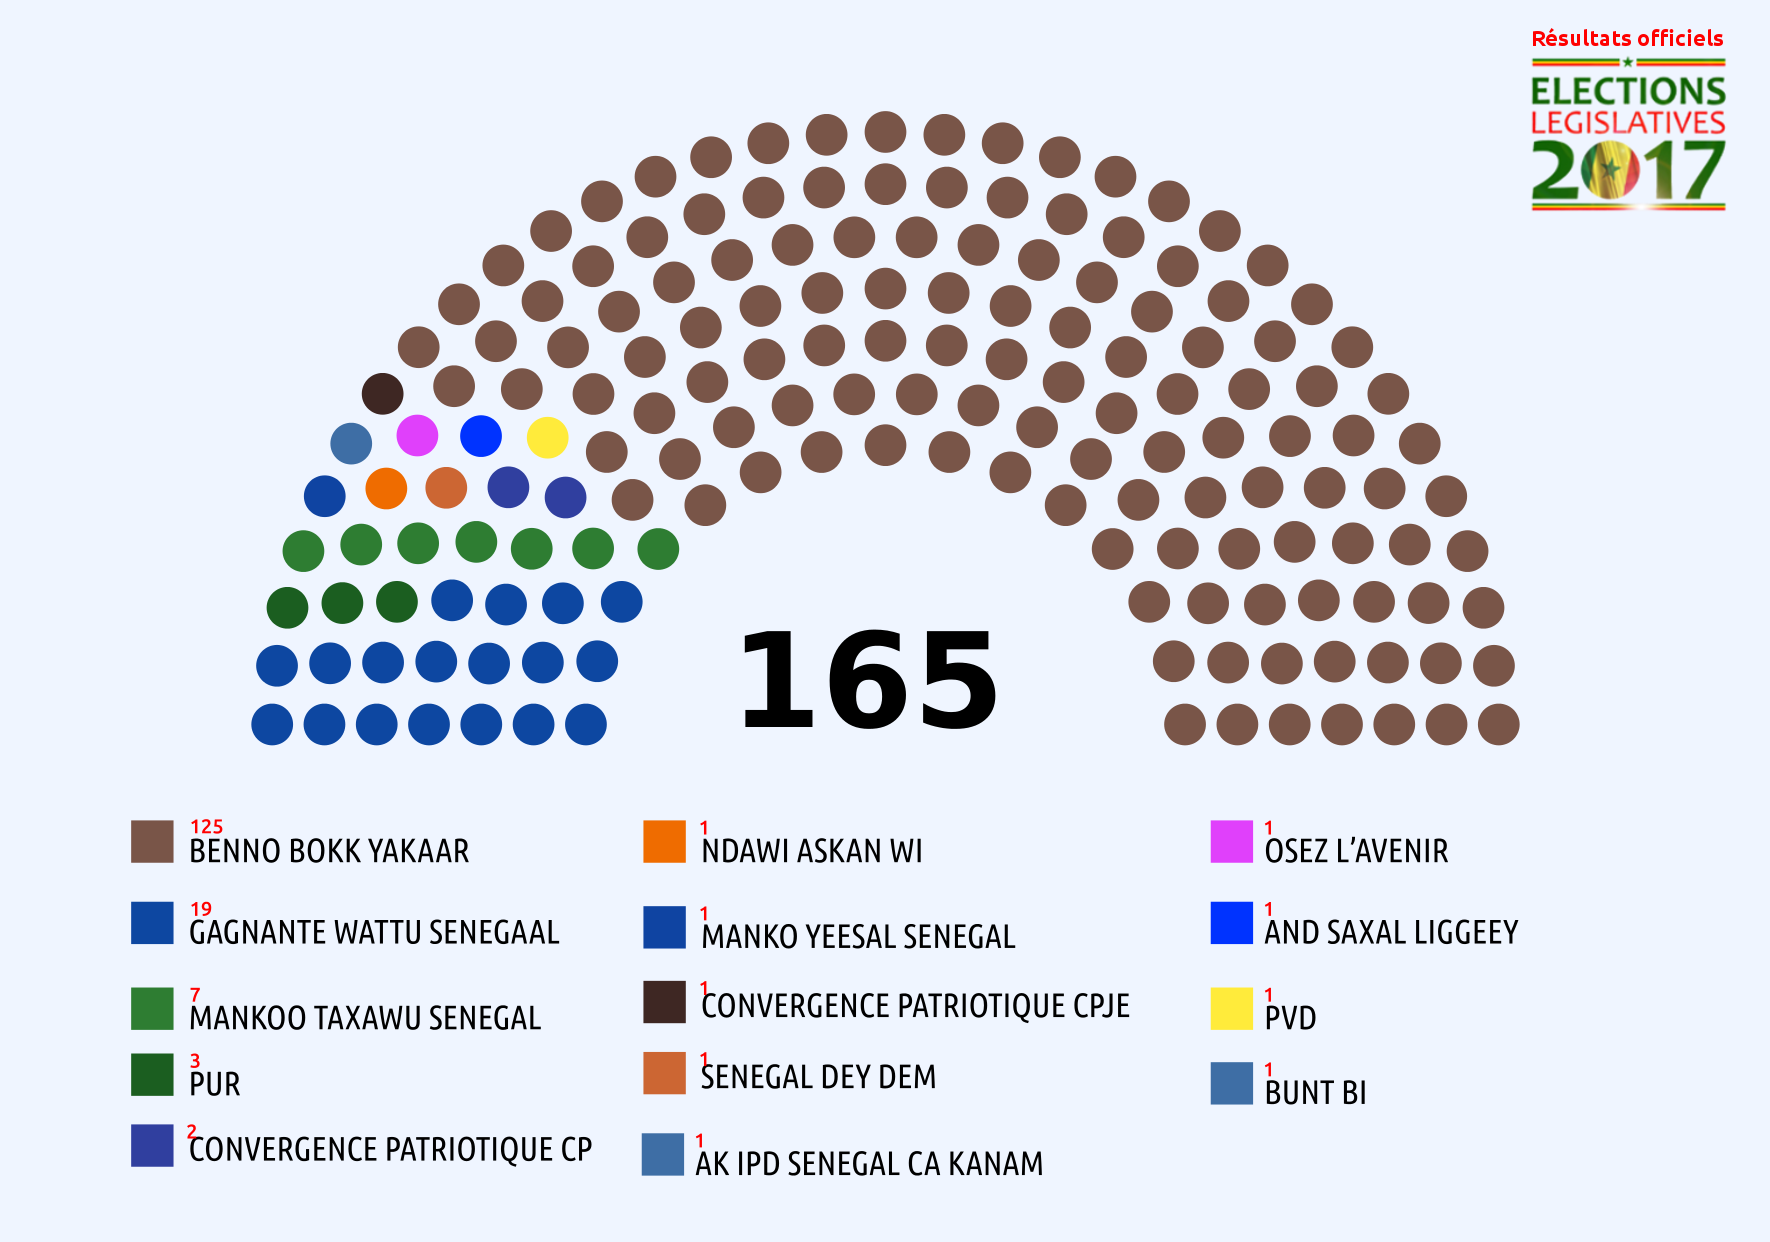 Les secrets de la treizième législature : 165 députés issus de 14 coalitions et partis (...) Benno Bokk Yakaar s'offre 125 députés (...) Neuf listes obtiennent chacune un siège